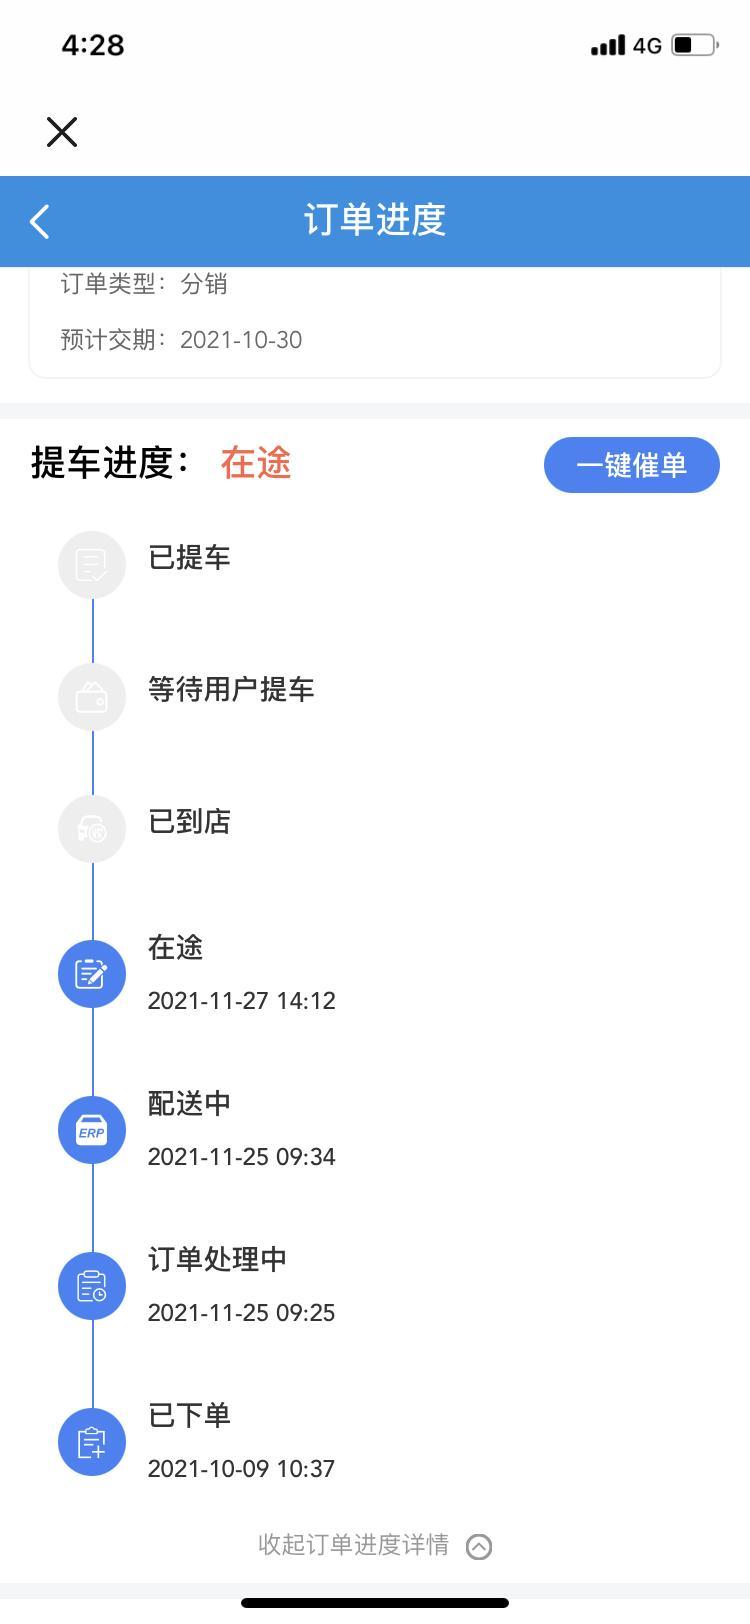 逸动 ?等车日记问一下车友们，车从重庆发往江苏大概需要几天，急用车?